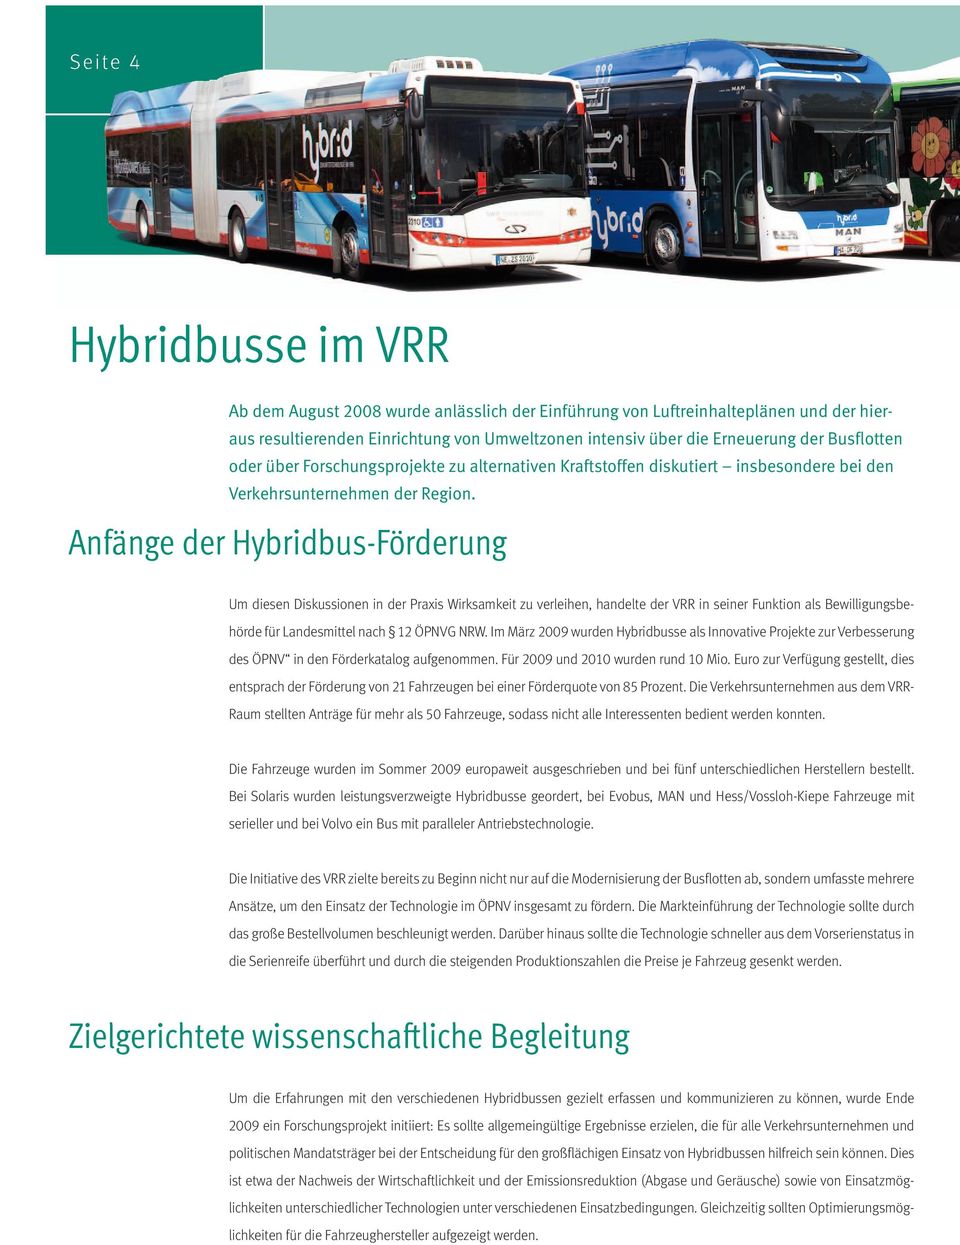 Anfänge der HybridbusFörderung Um diesen Diskussionen in der Praxis Wirksamkeit zu verleihen, handelte der VRR in seiner Funktion als Bewilligungsbehörde für Landesmittel nach ÖPNVG NRW.